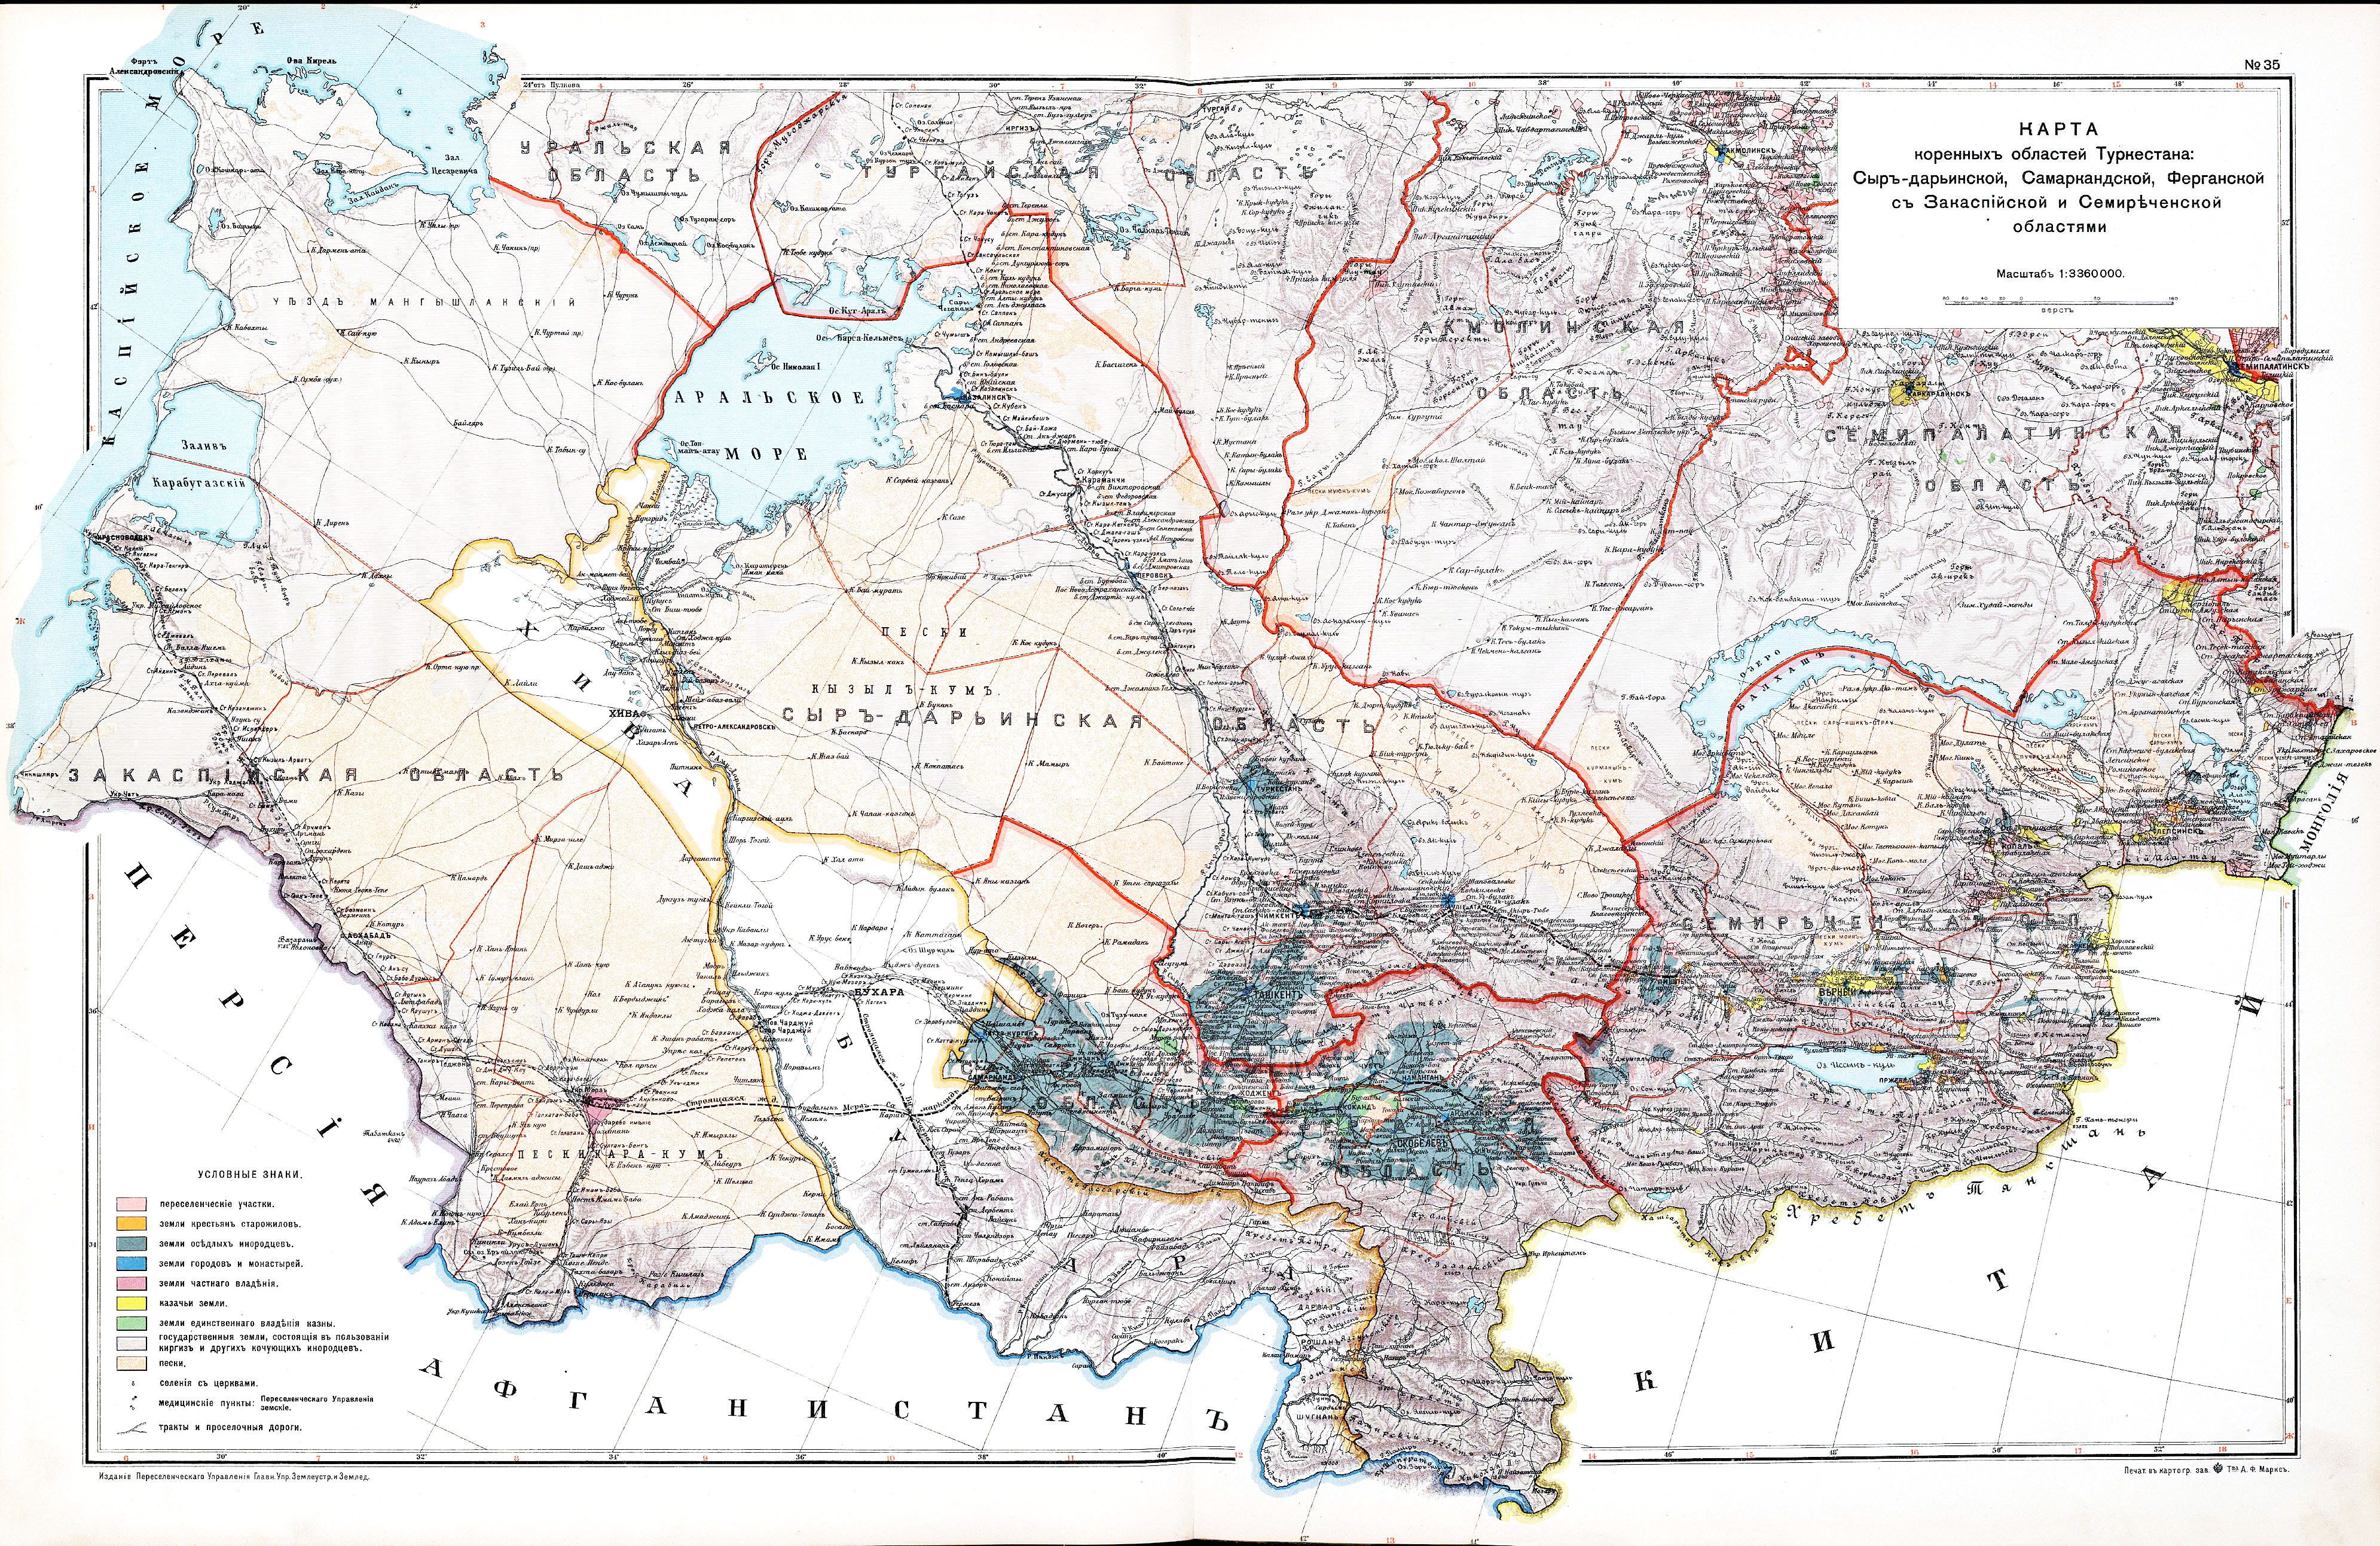 Карта коренных областей Туркестана: Сыр-Дарьинской, Самаркандской, Ферганской с Закаспийской и Семиреченской областями